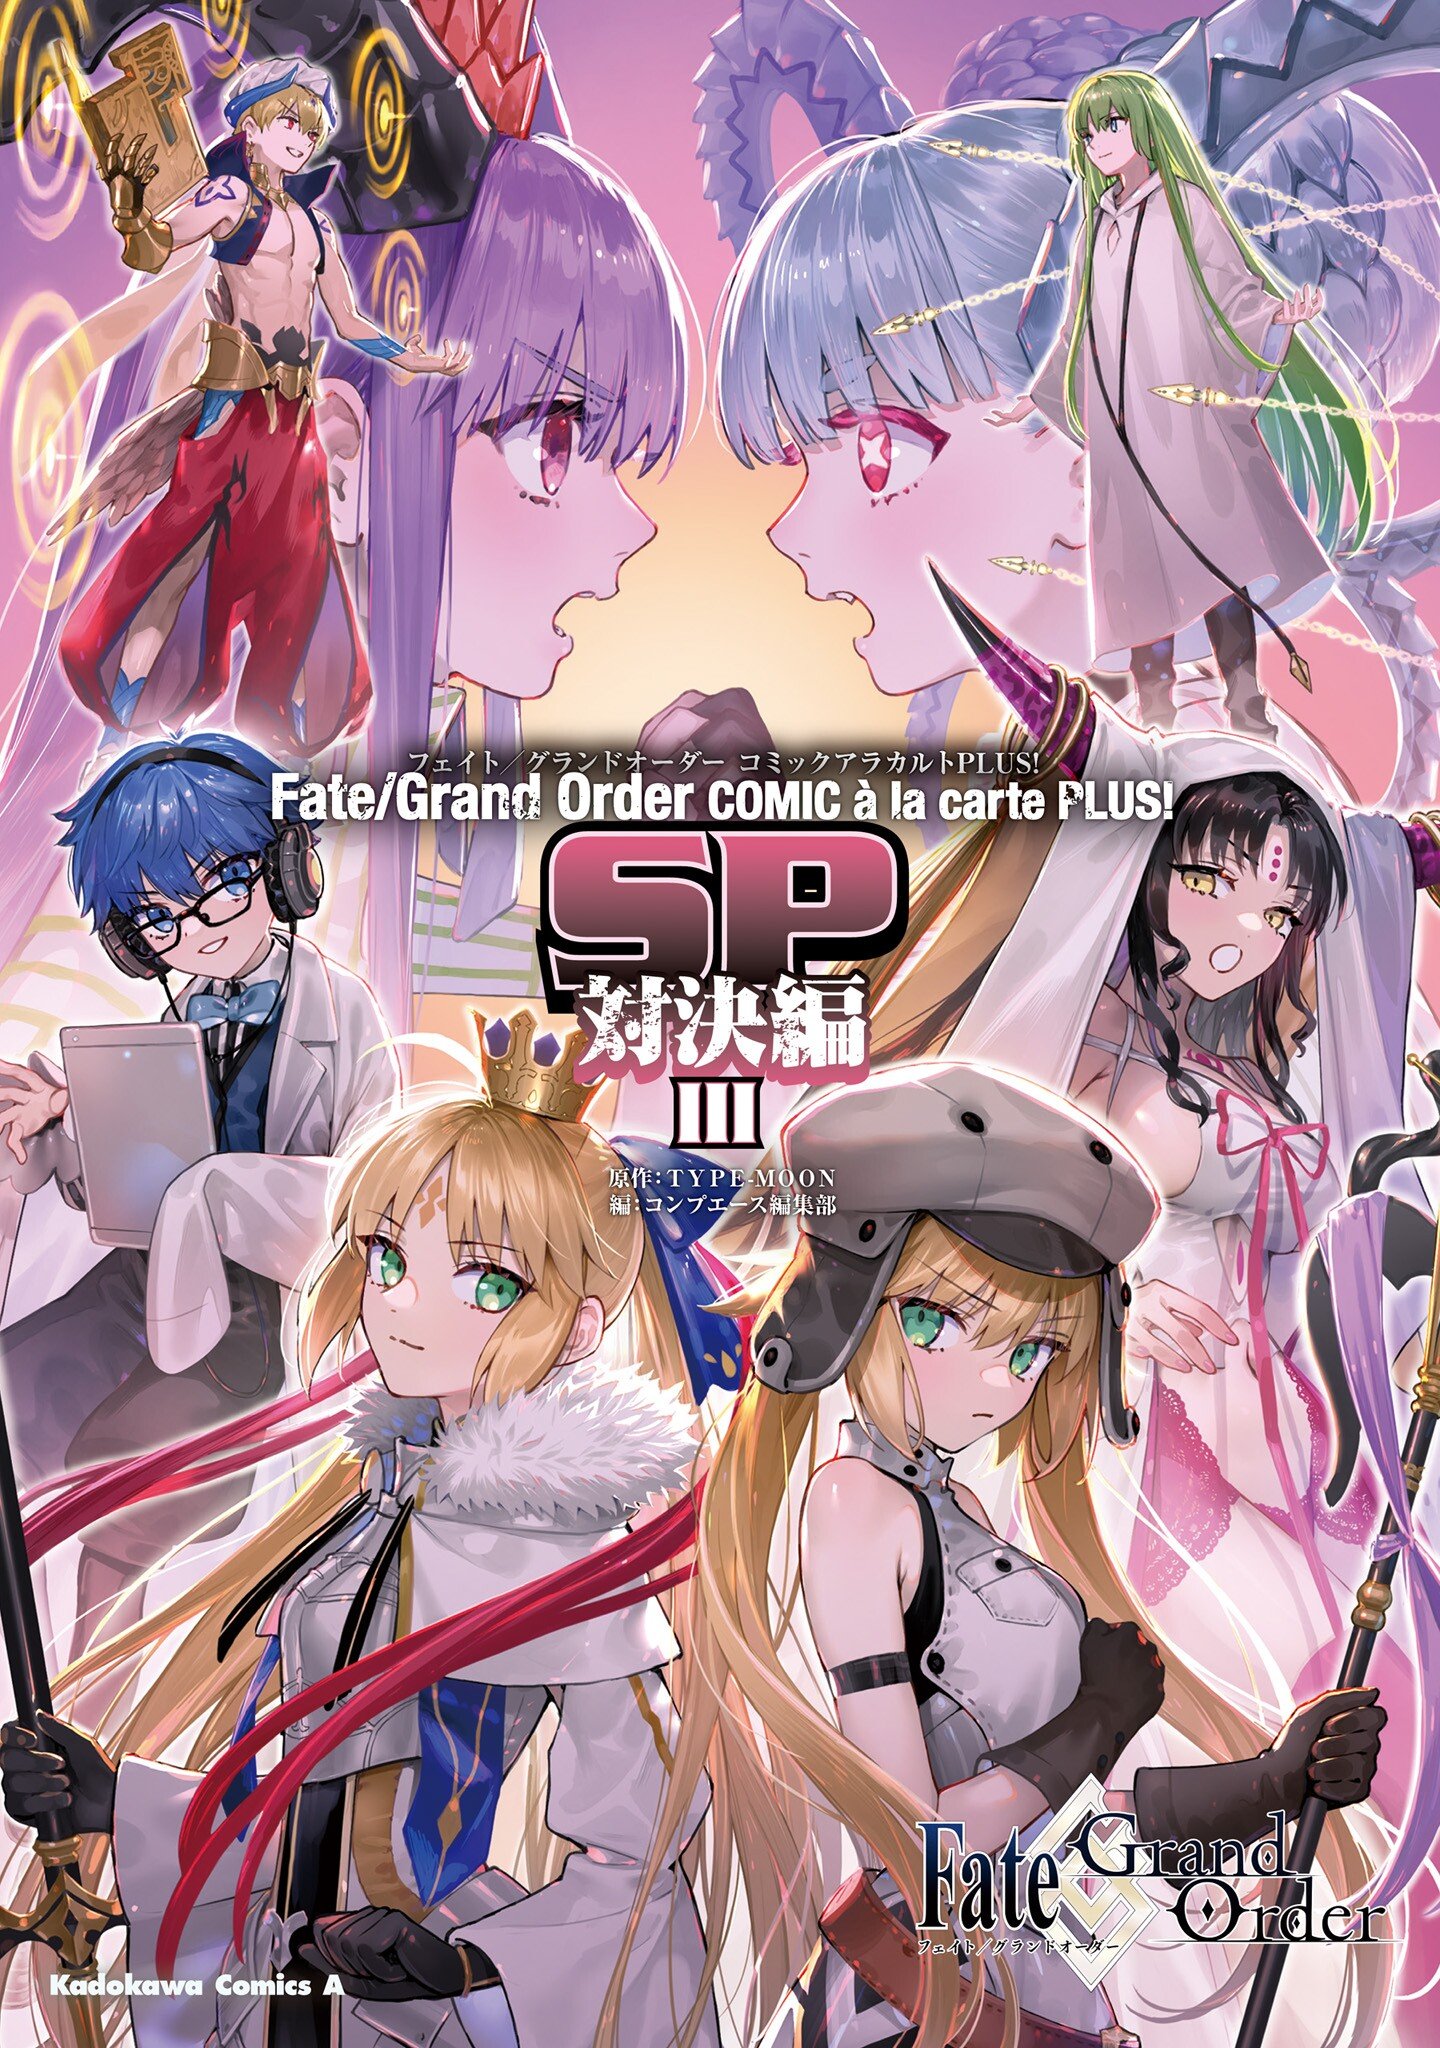 Fate/Grand Order COMIC à la carte PLUS! SP Showdown!